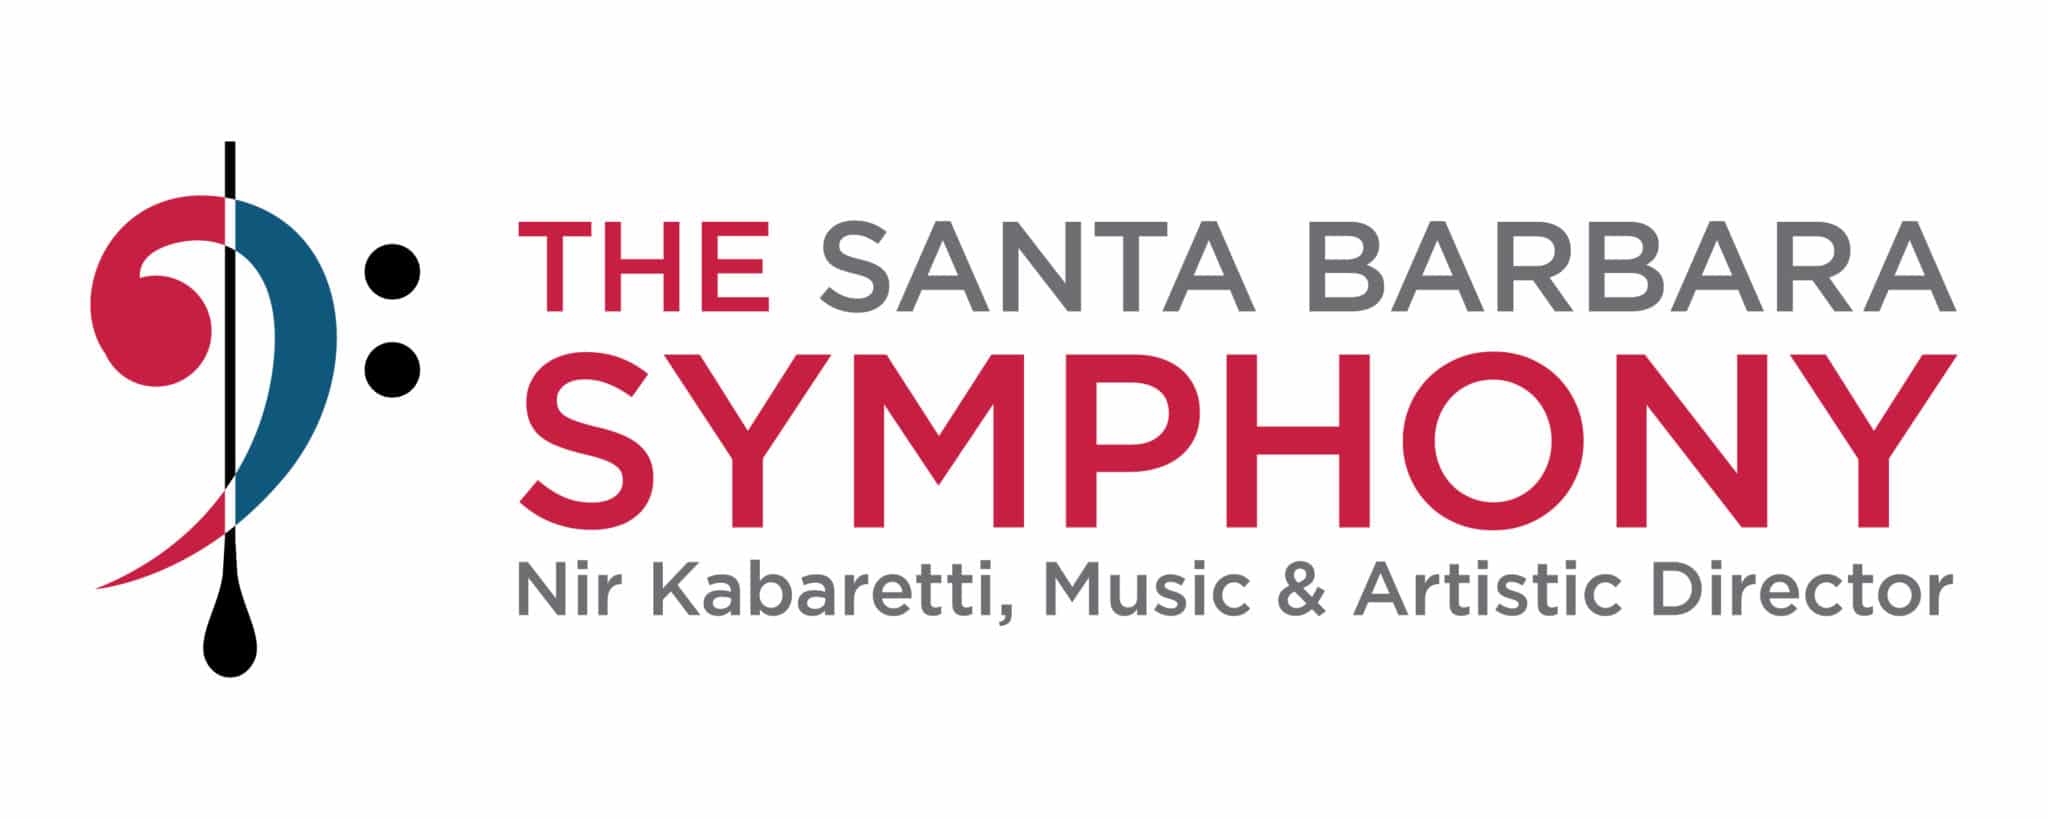 The Santa Barbara Symphony